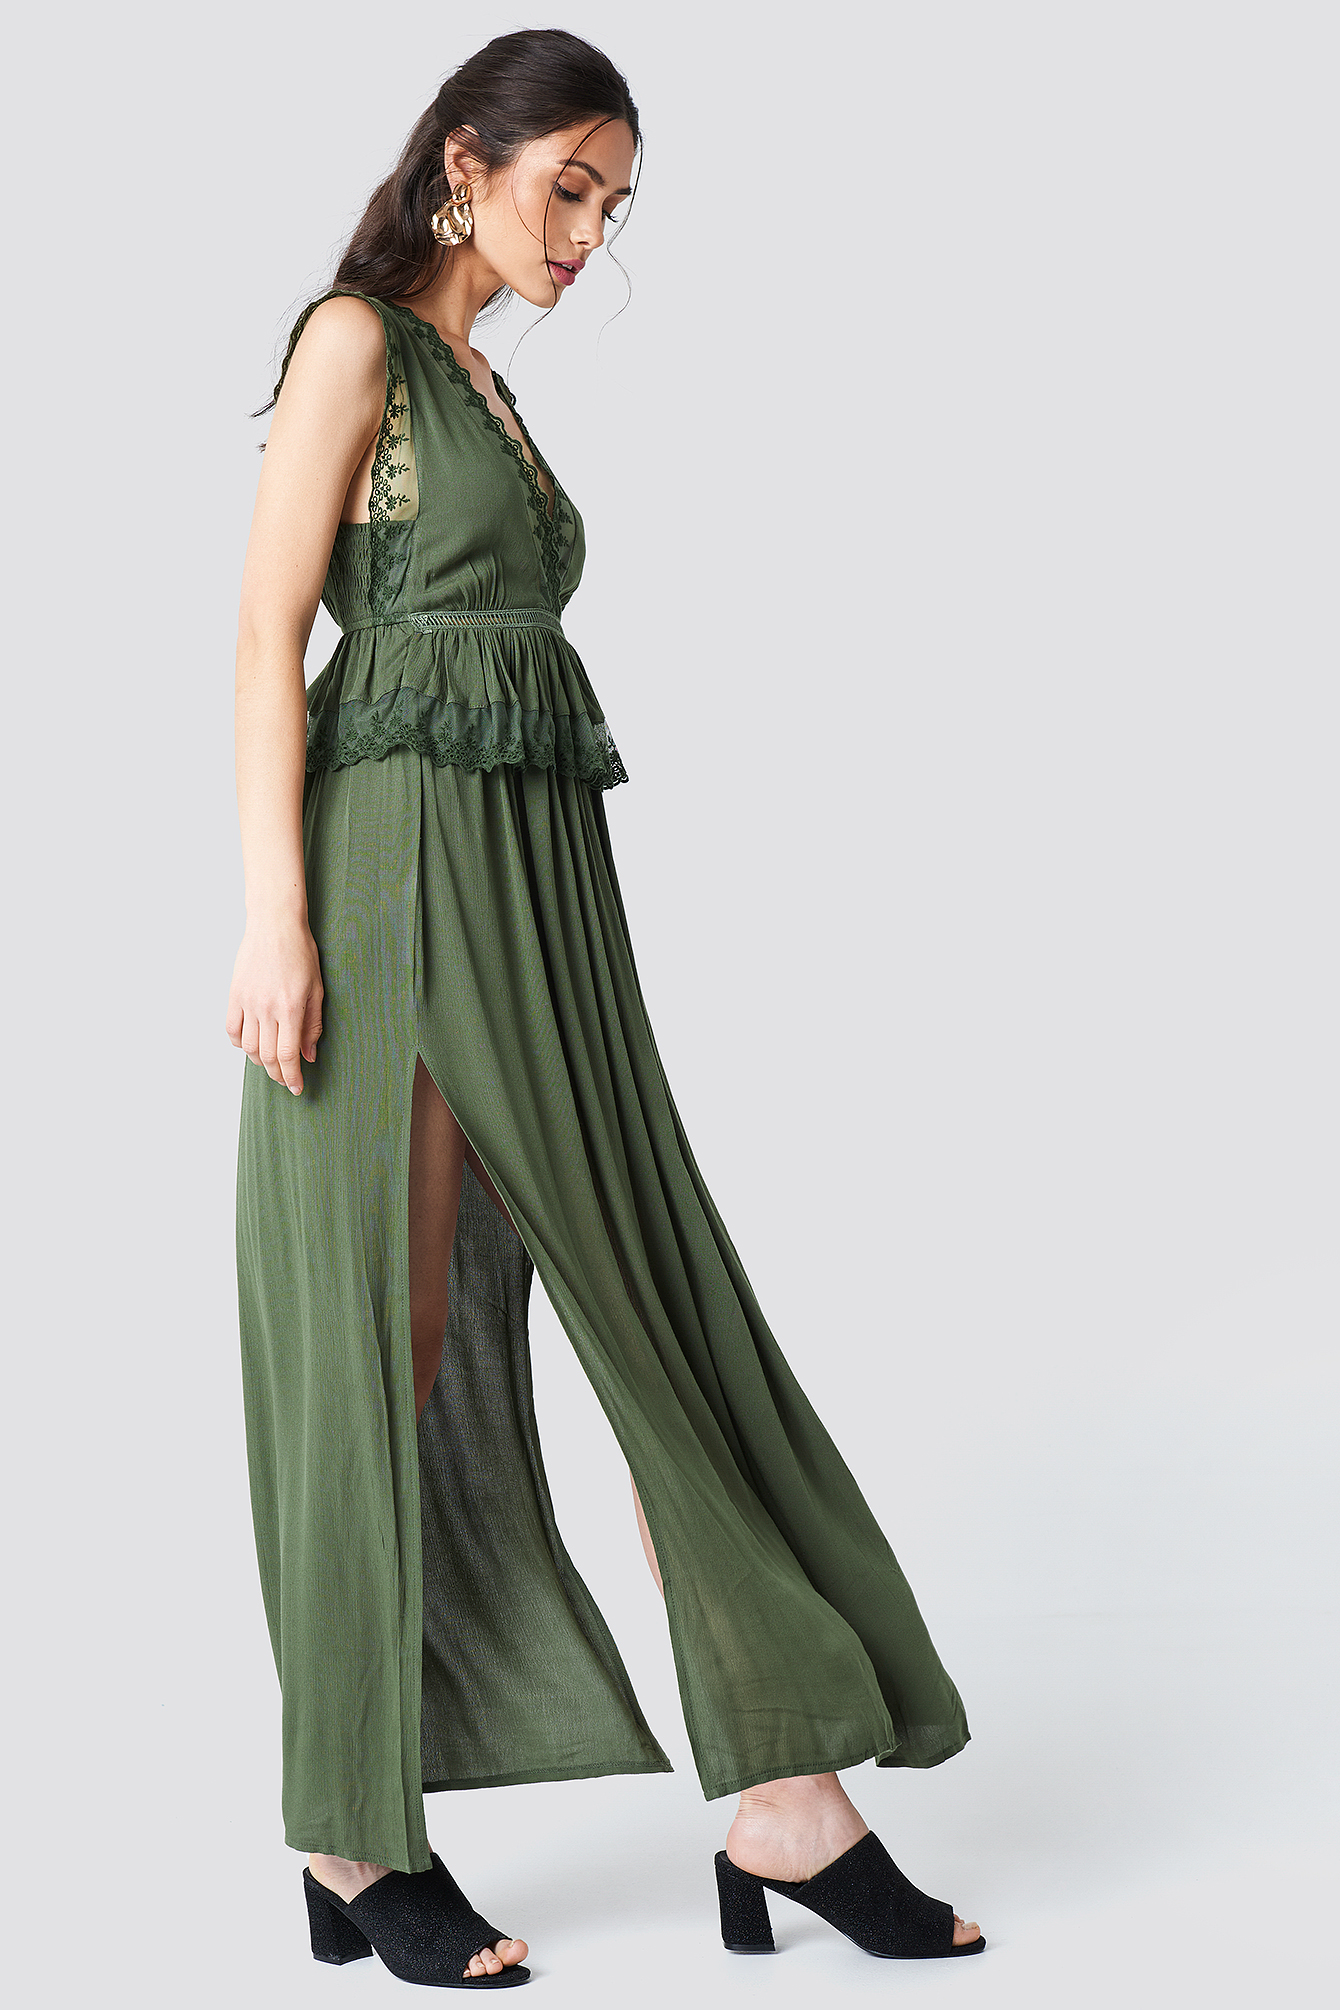 Green Slits Maxi Dress